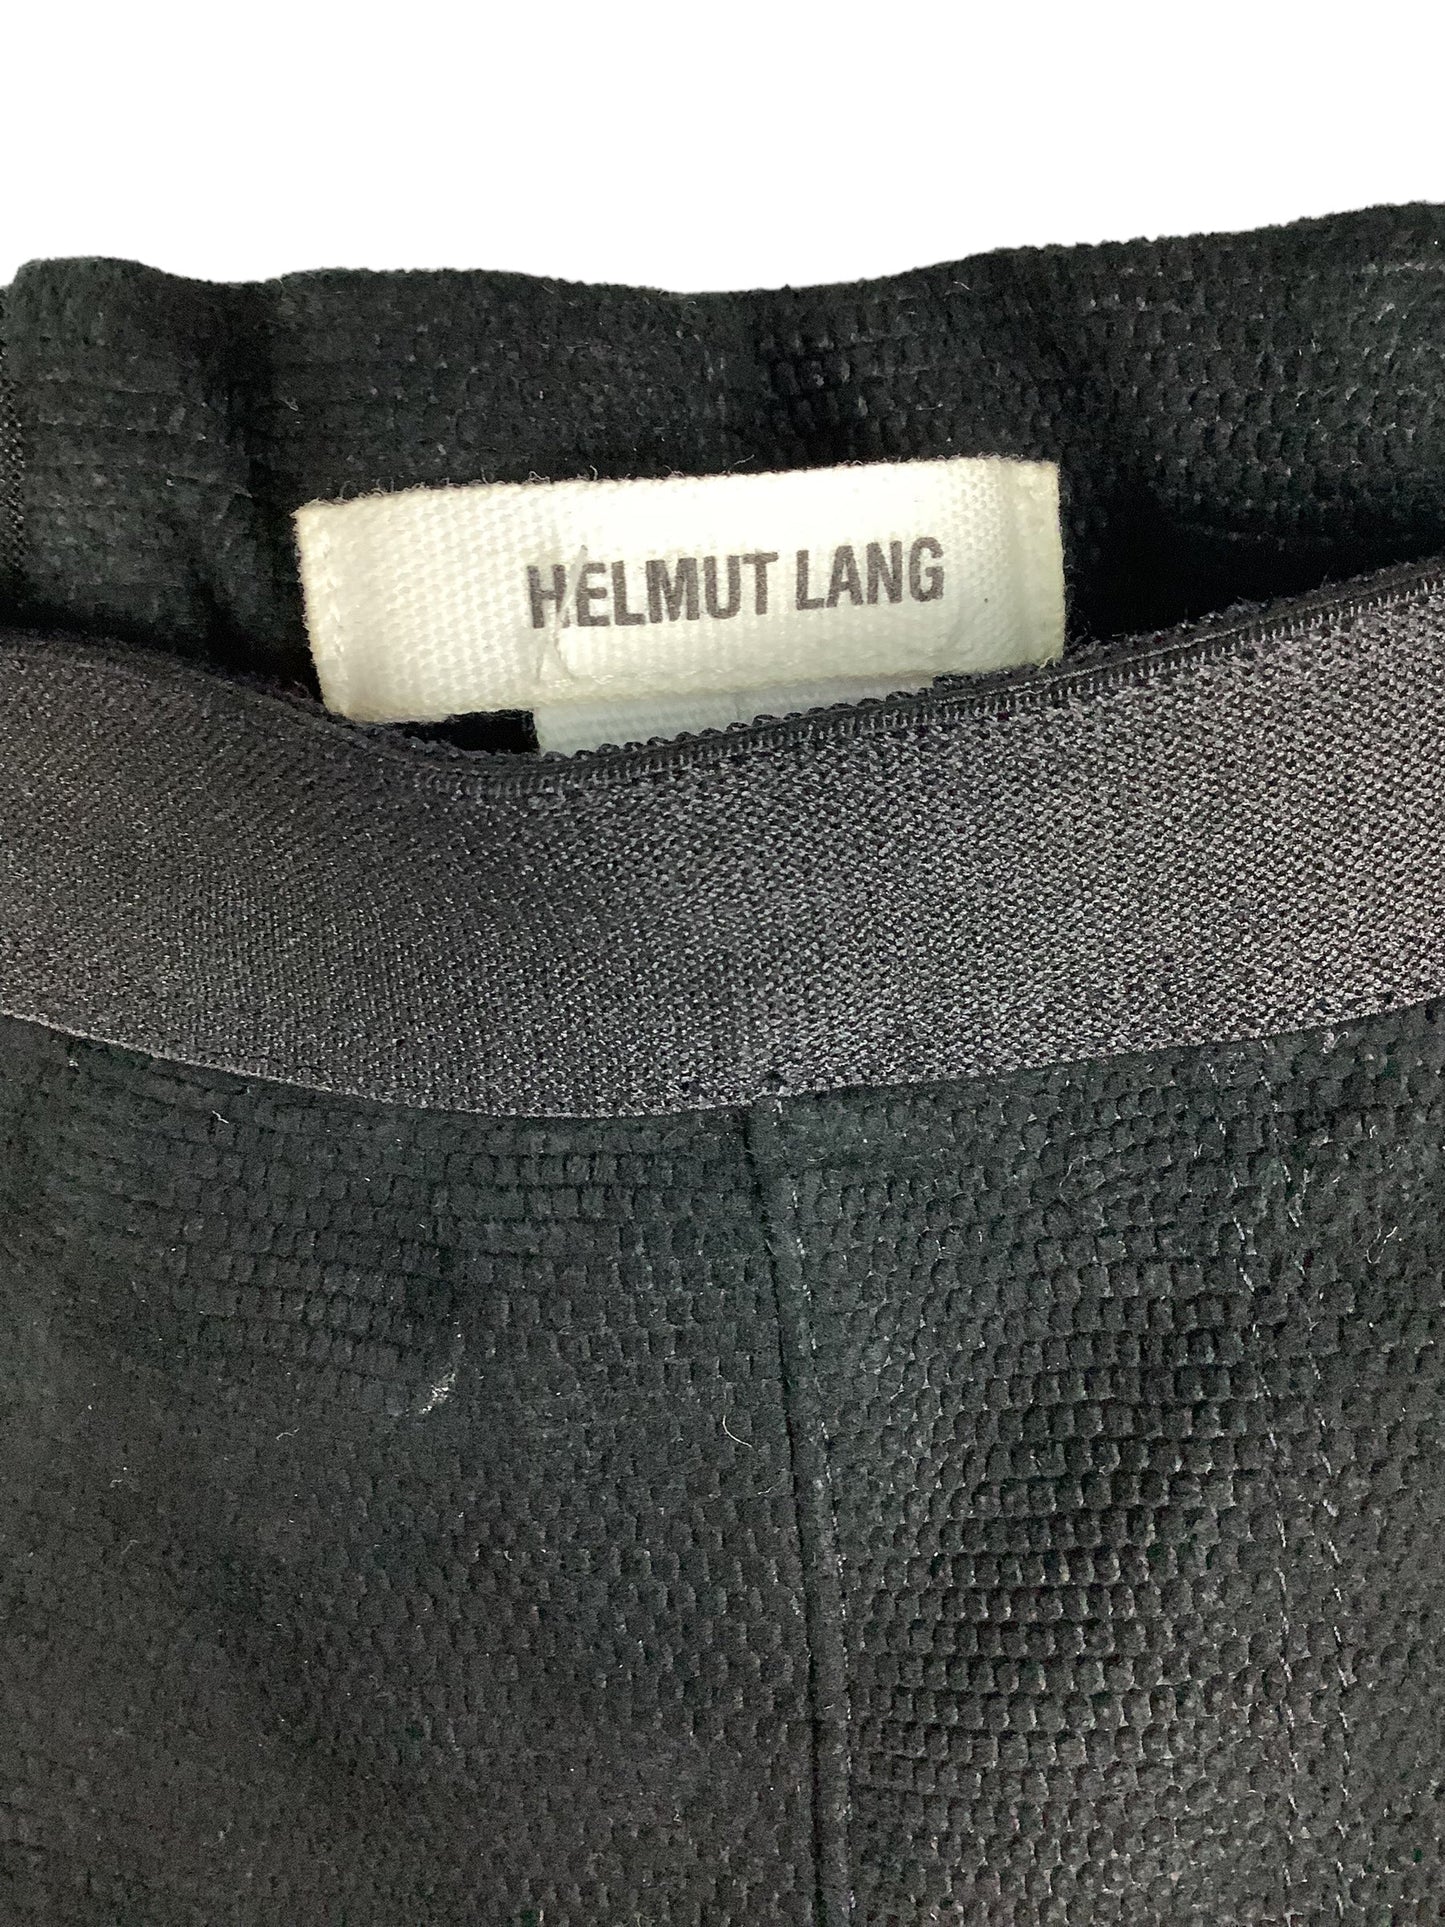 Black Pants Designer Helmut Lang, Size 2